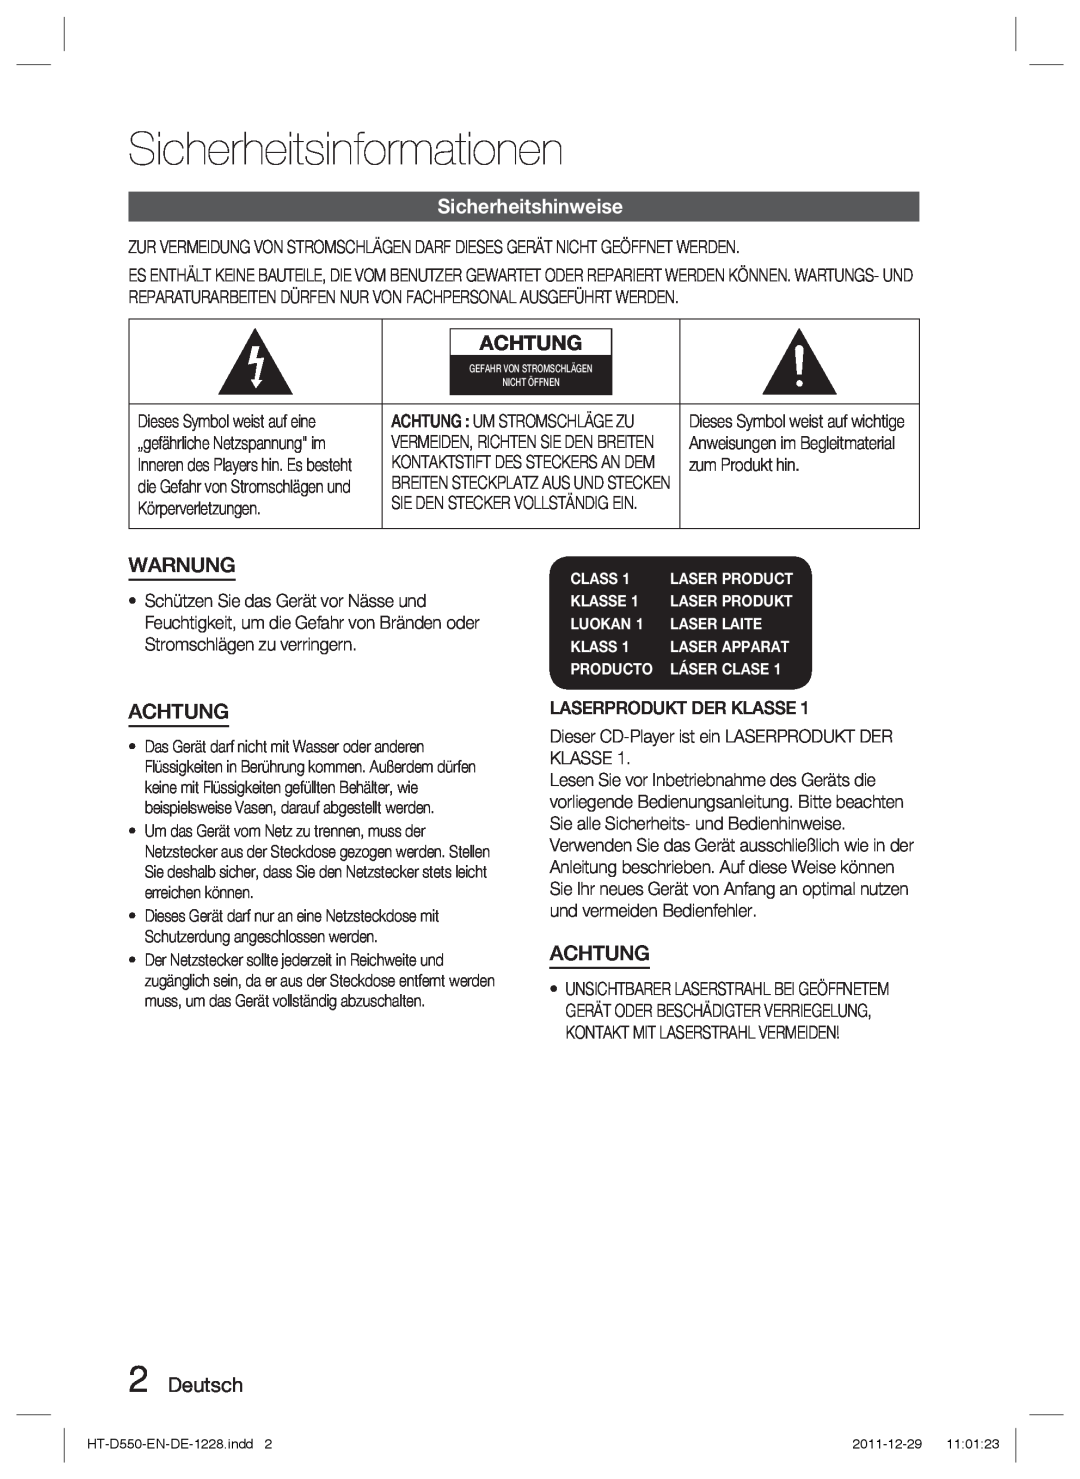 Samsung HT-D550/XN manual Sicherheitsinformationen, Sicherheitshinweise, Achtung, Warnung, Deutsch, Class, Klasse, Luokan 